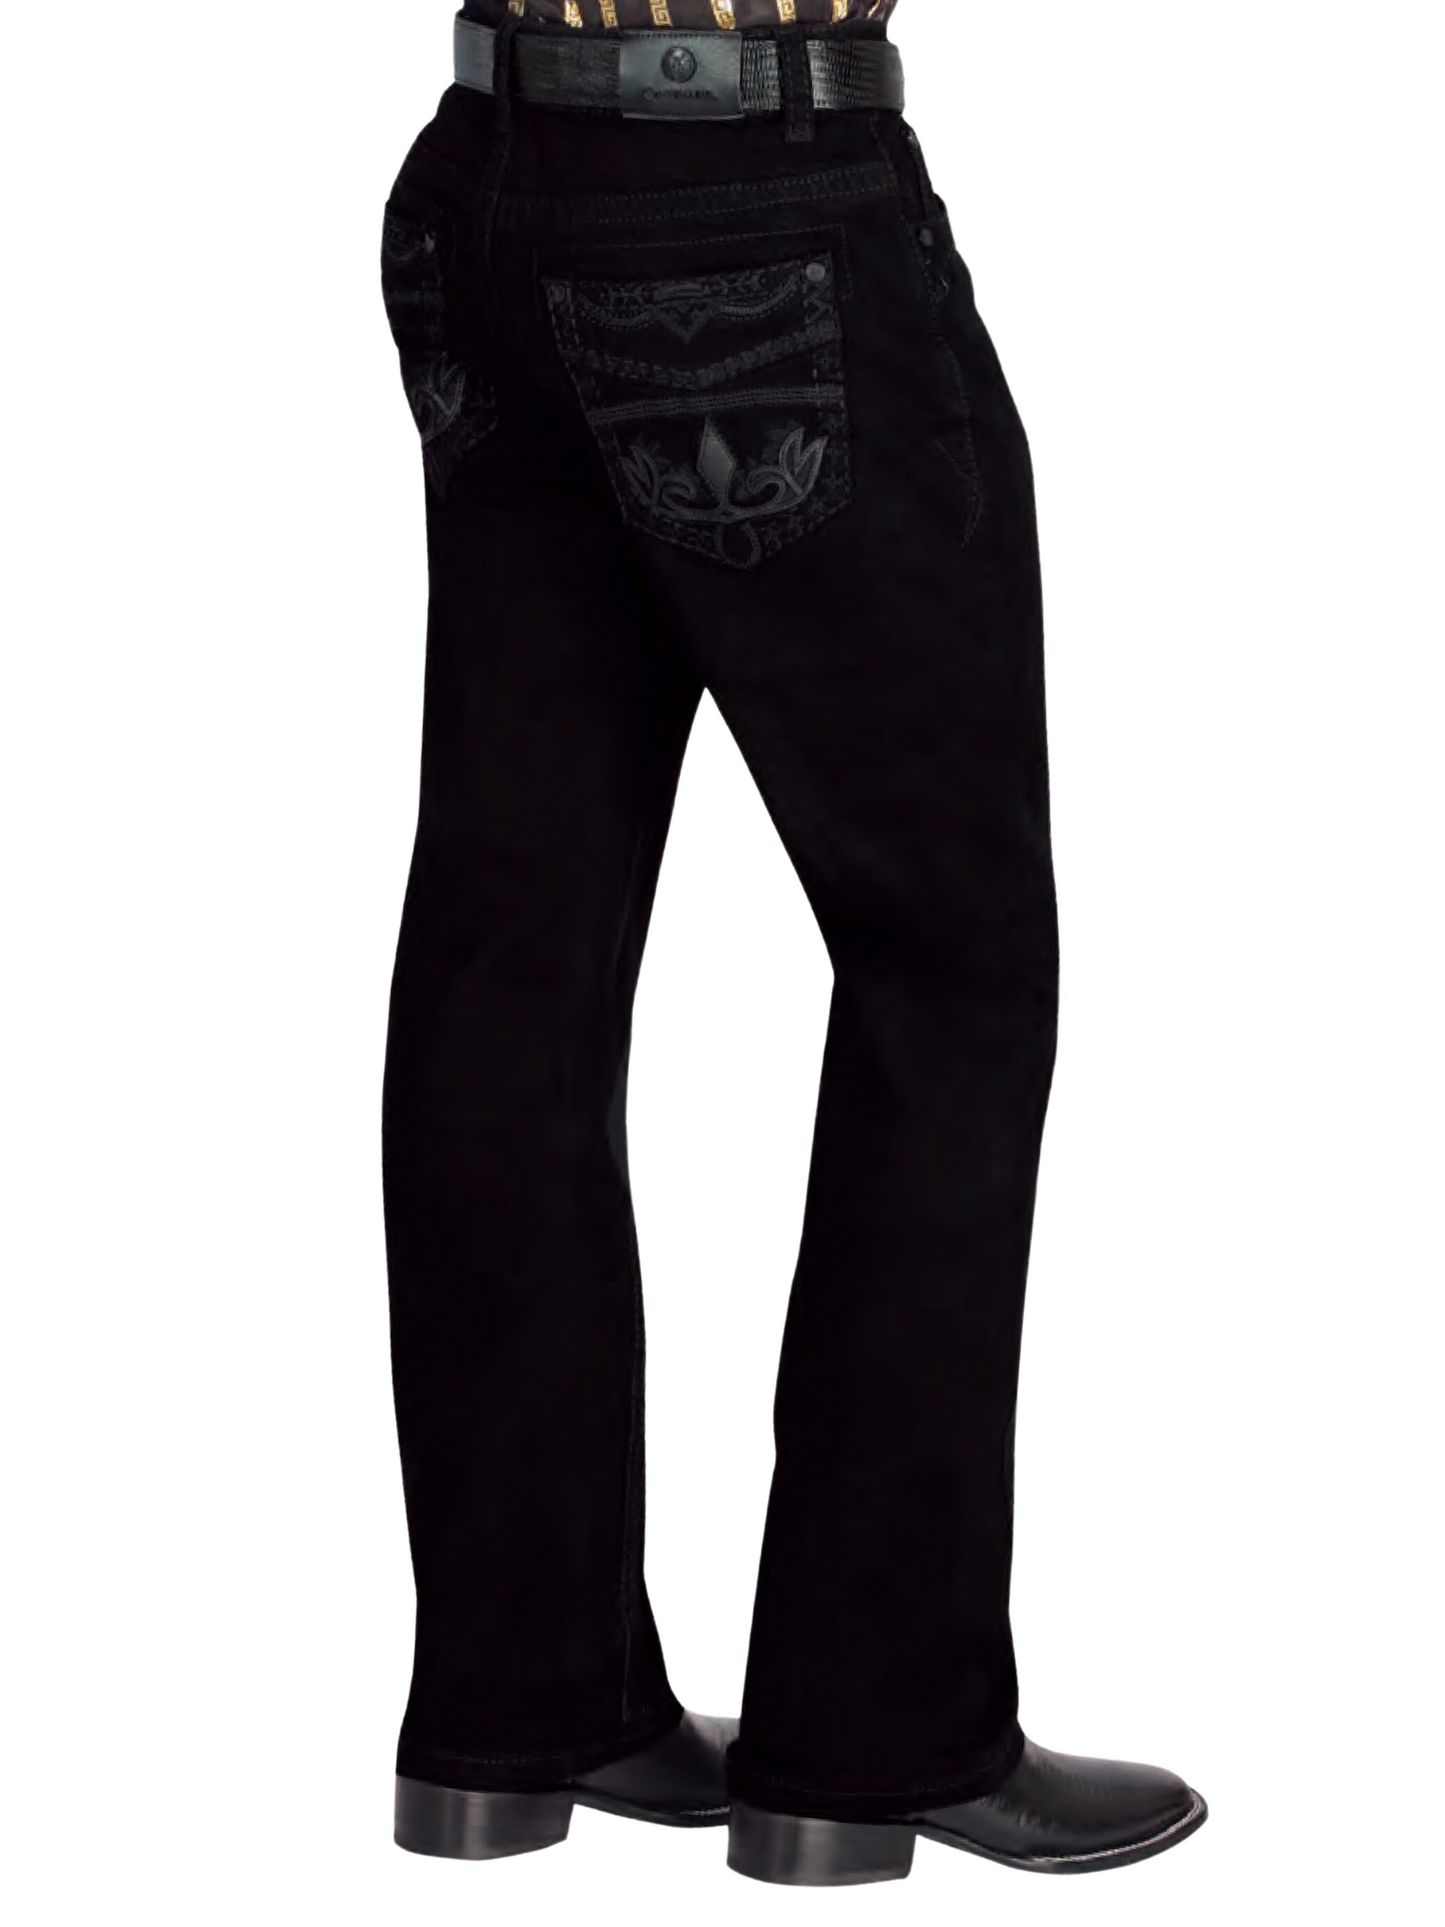 Black Boot Cut Denim Jeans for Men 'Centenario' - ID: 44840 Denim Jeans Centenario